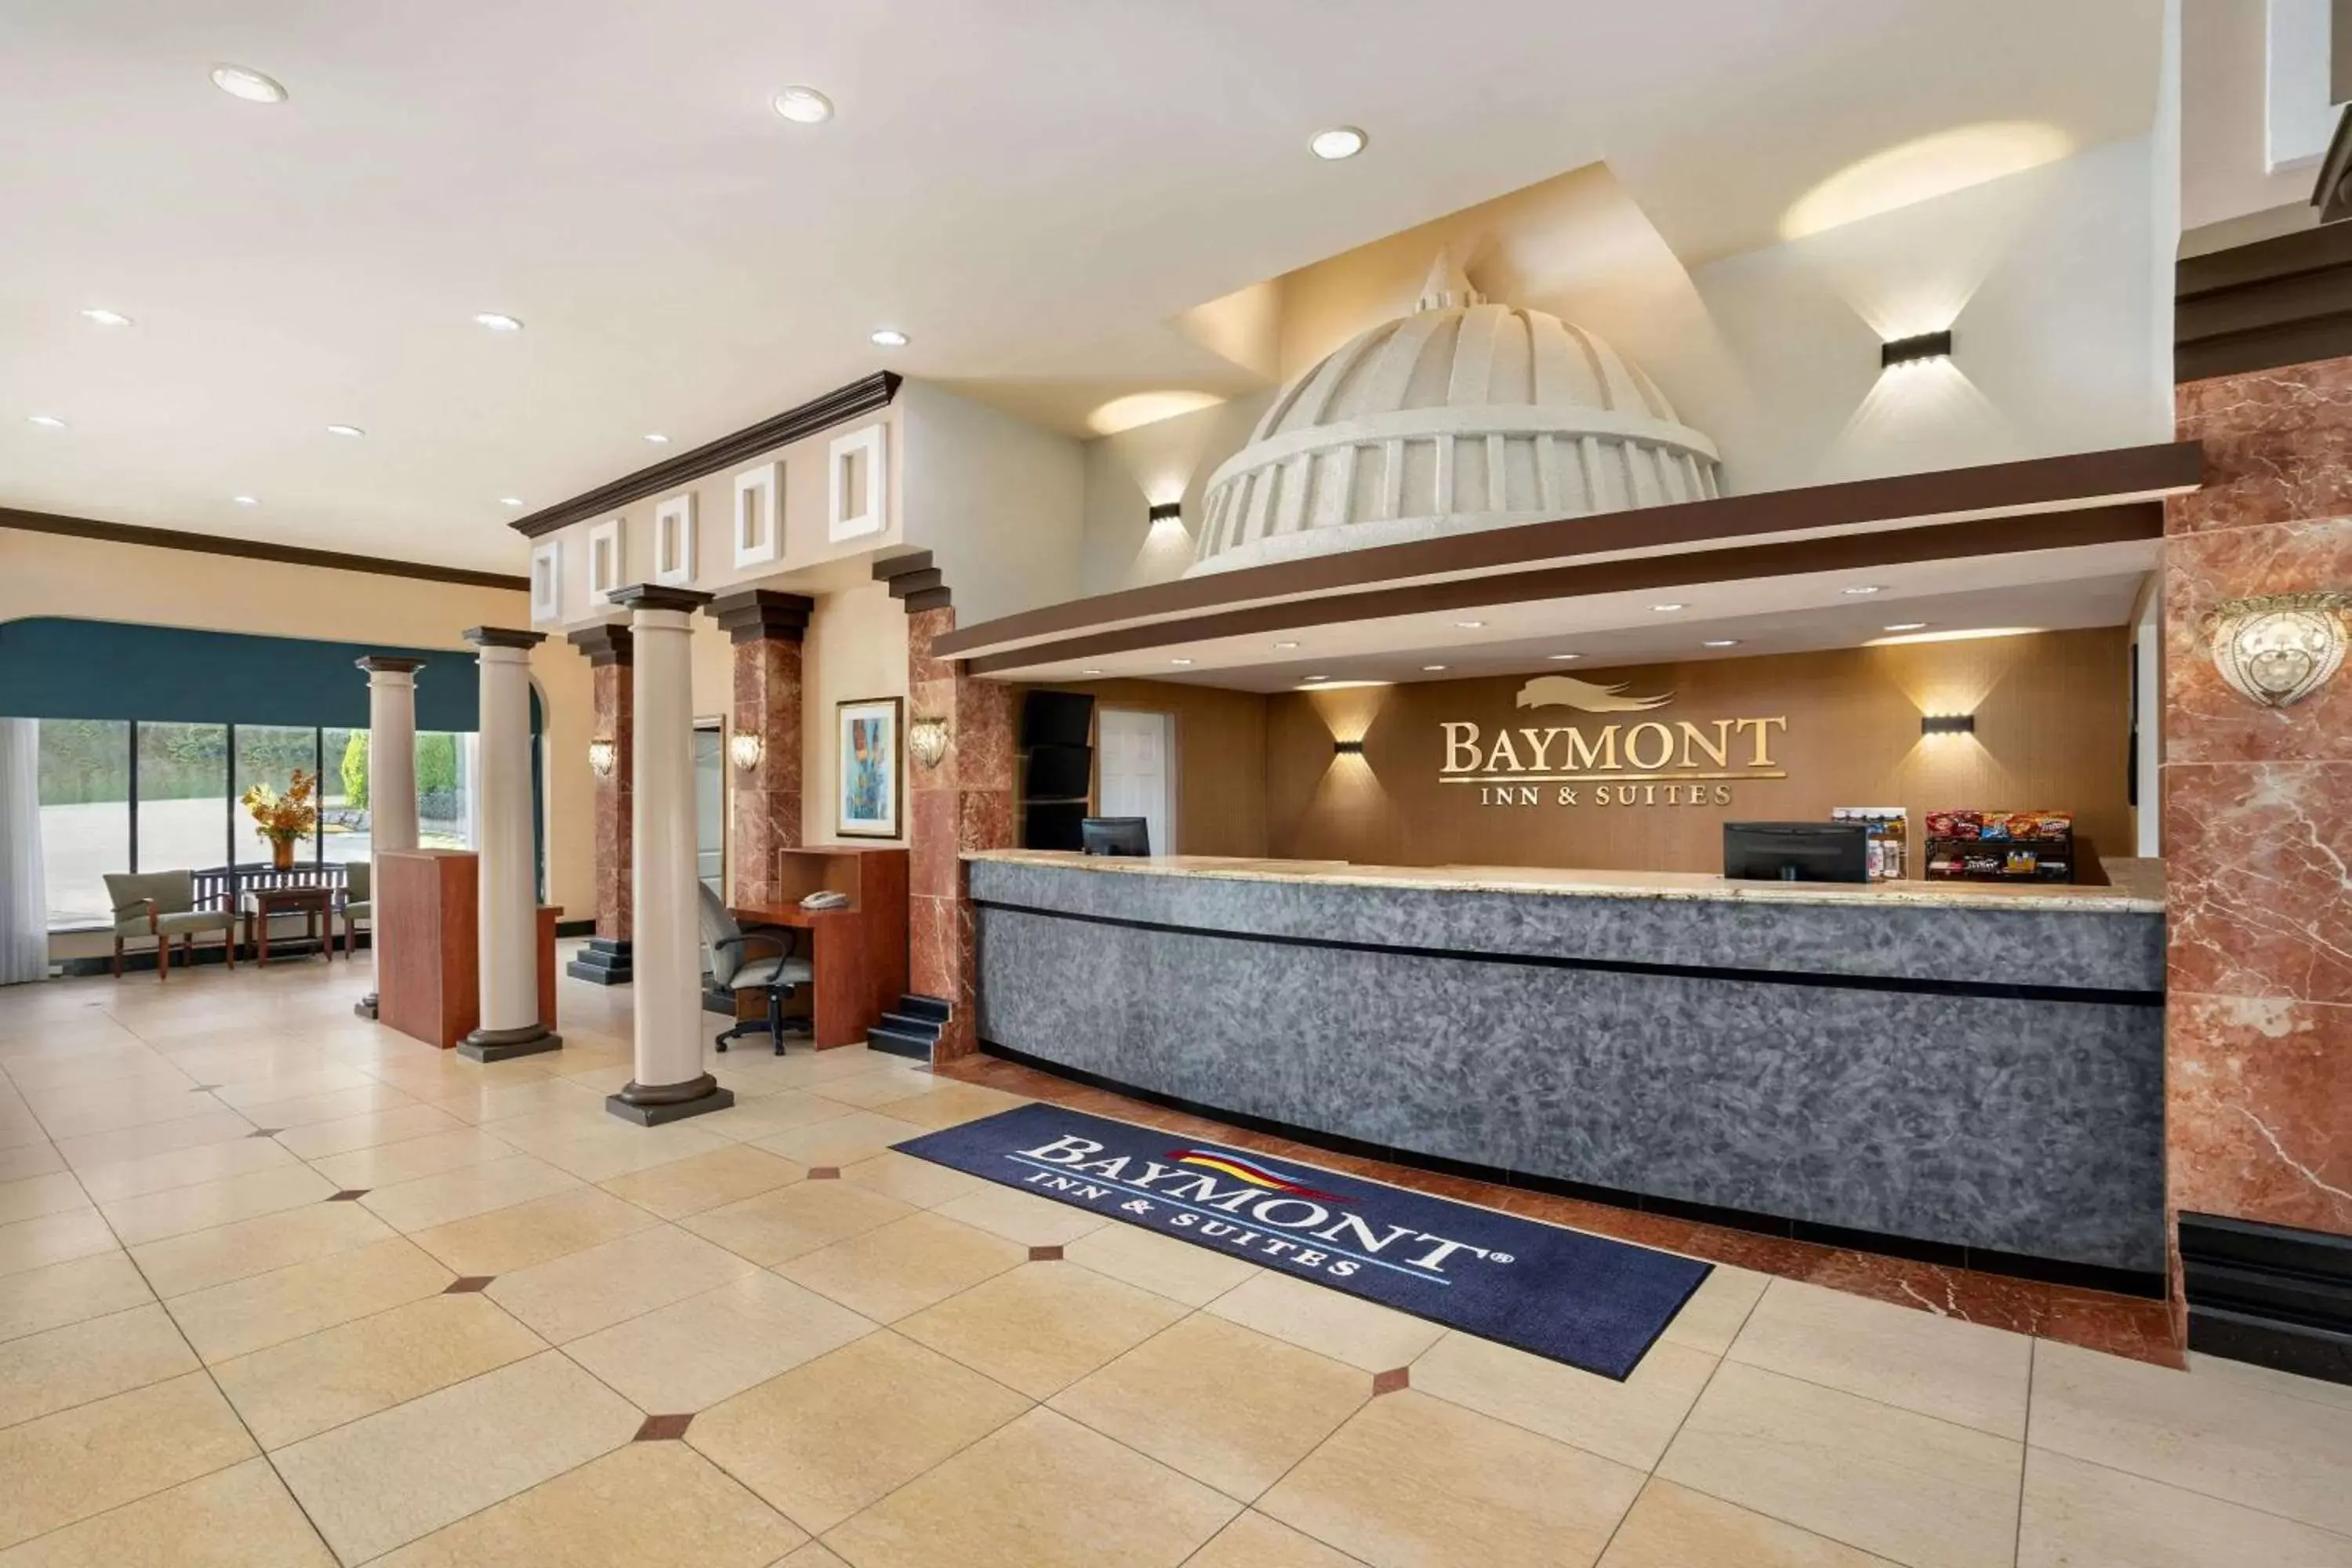 Lobby or reception, Lobby/Reception in Baymont by Wyndham Bremerton WA